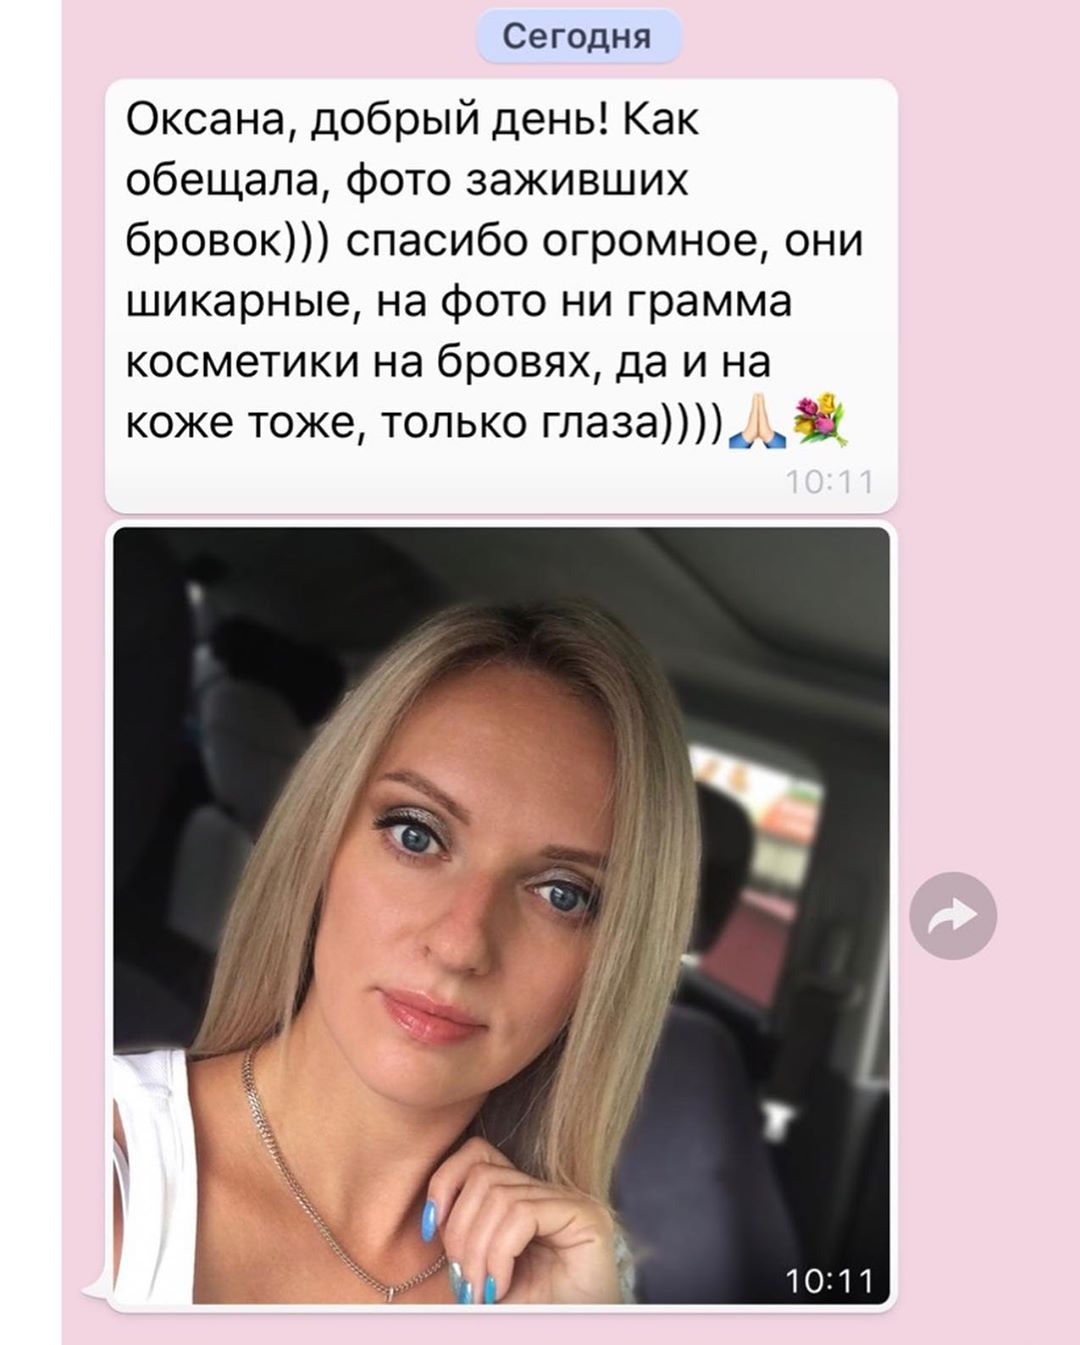 Отзыв клиента от 29 июня 2019 о работе мастера Глущенко Оксаны в Хабаровске